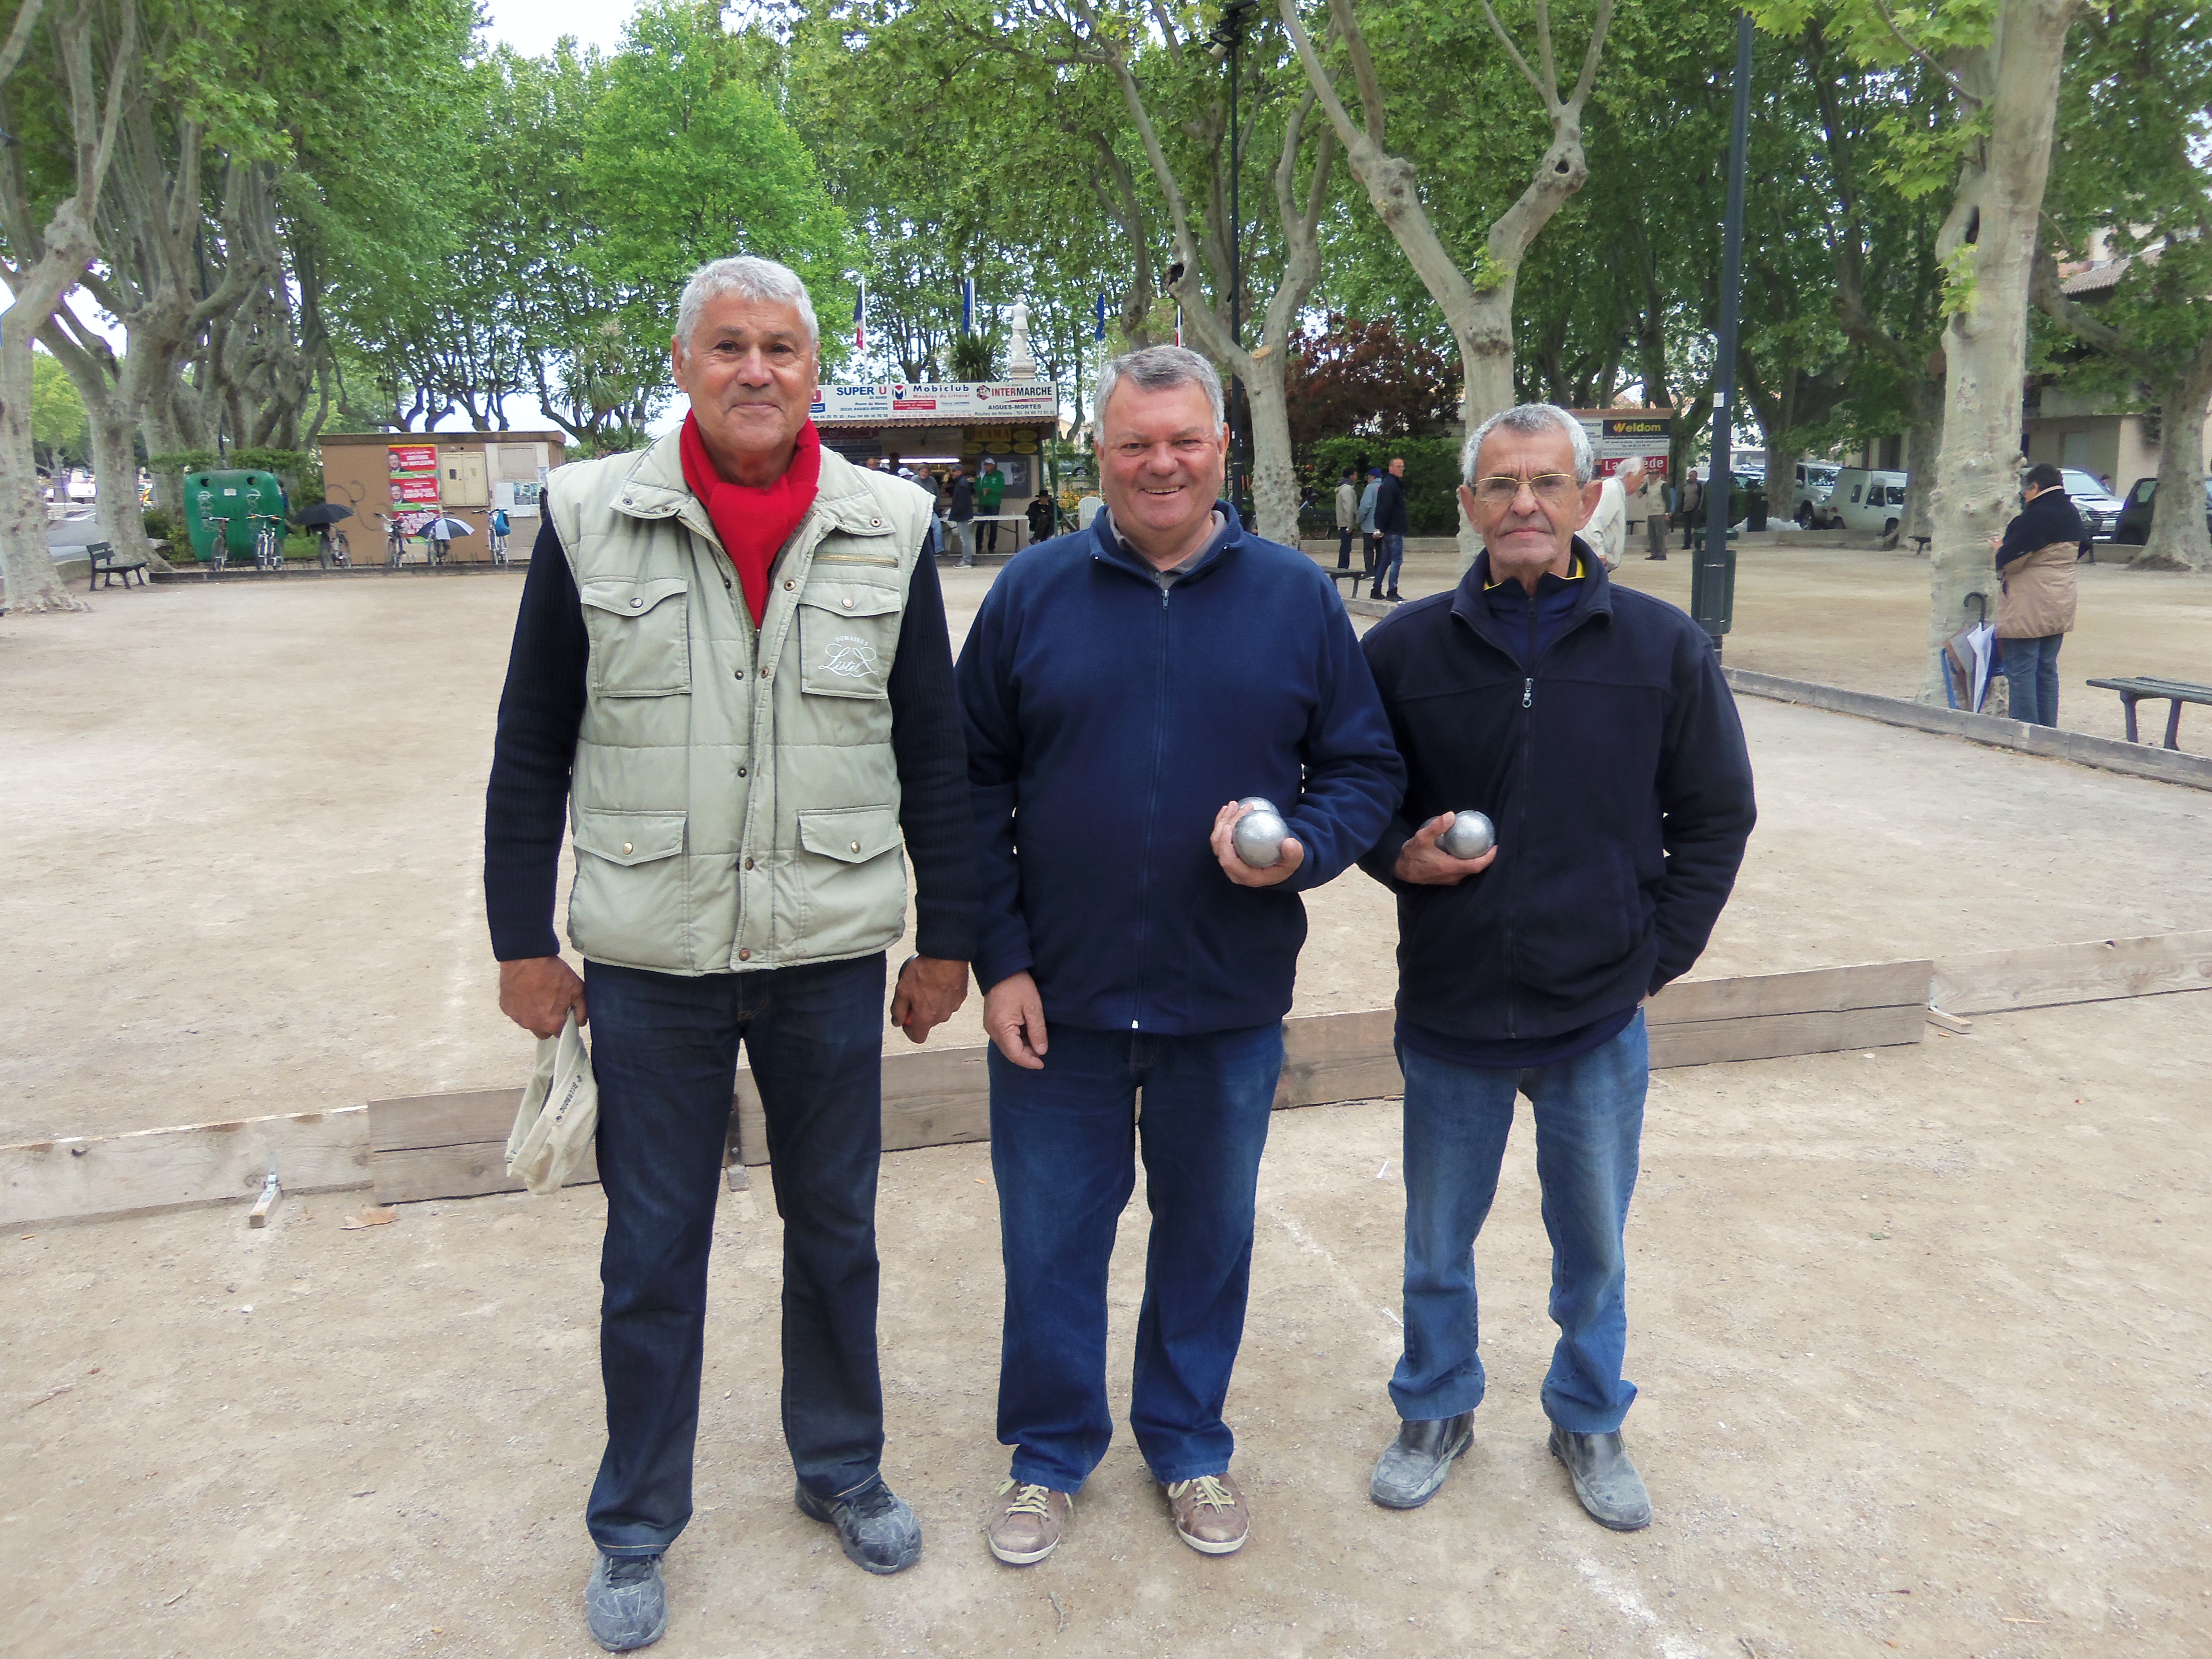 Jean-claude URBE, Gérard MICHEL et Gérard ROUVIERE se sont distingués en accédant au quart de finale du challenge Louis MEZY les 19 et 20 avril. Félicitations aux dignes représentants de la BSAM.